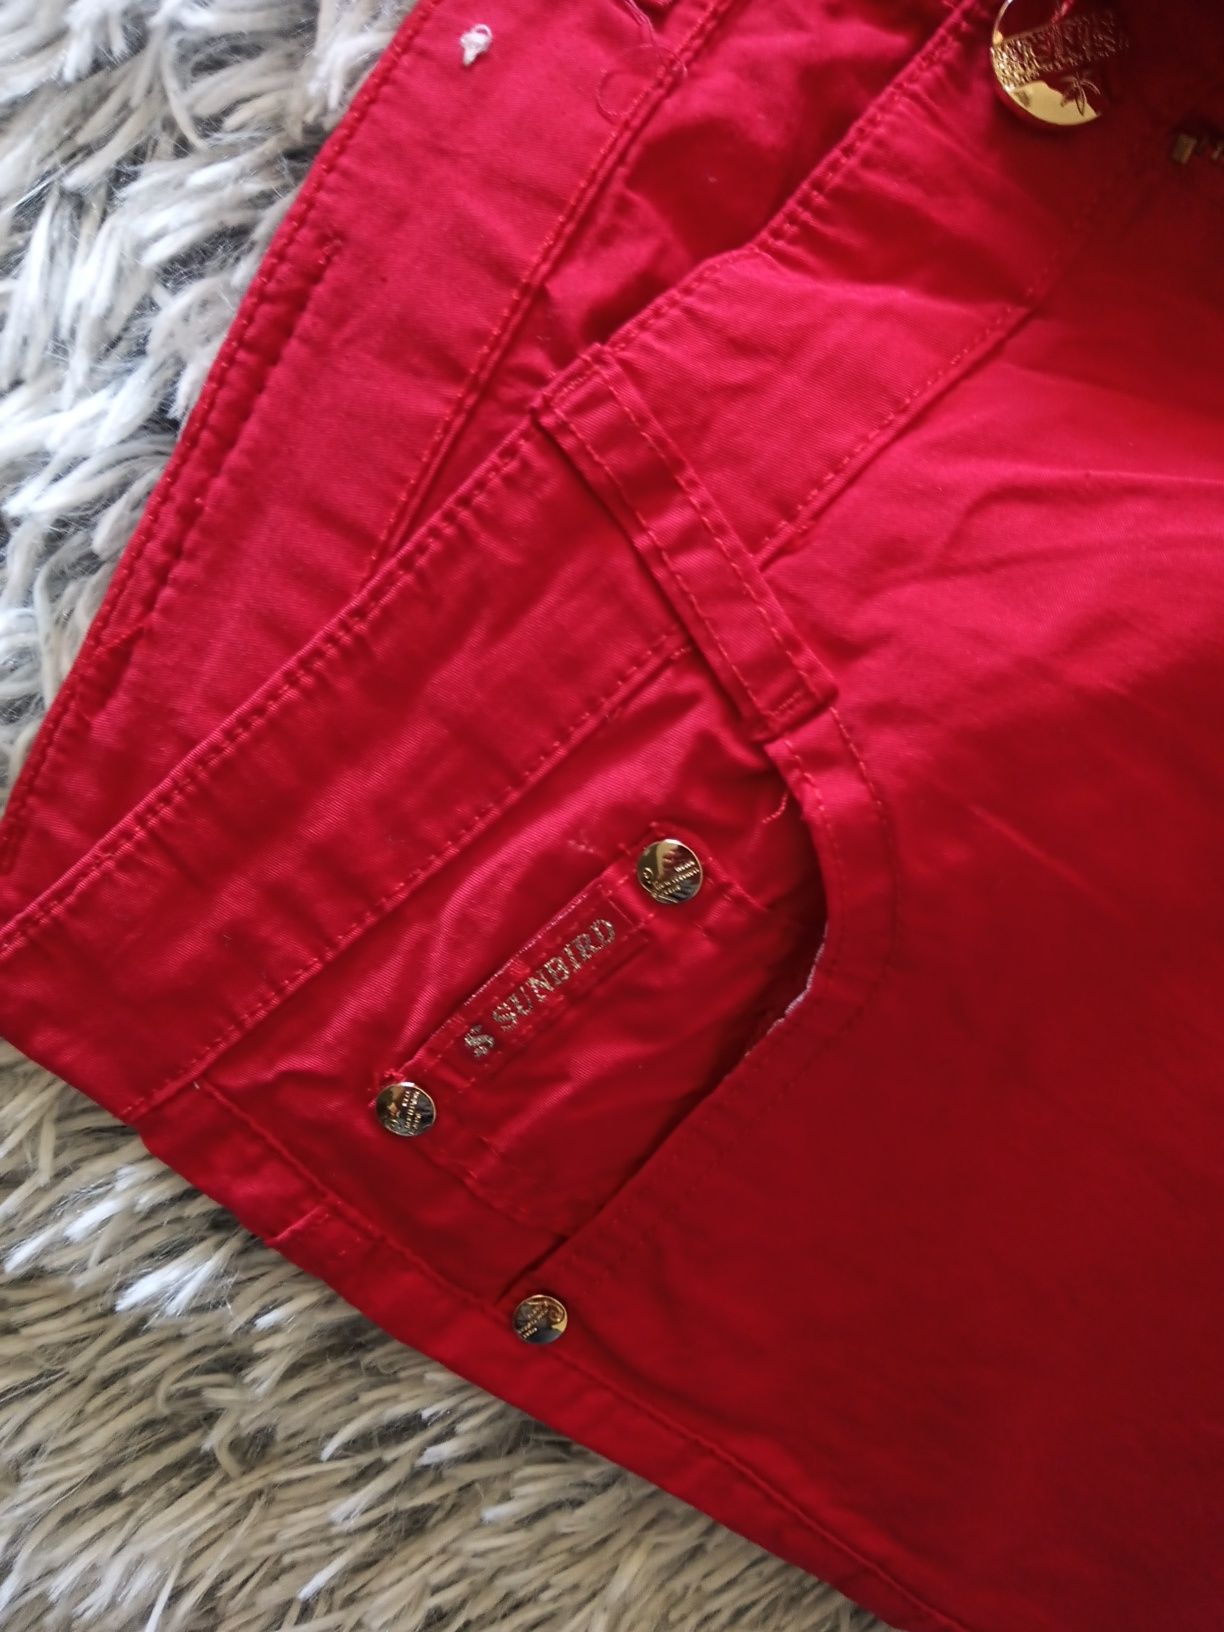 Spodnie czerwone proste nogawki kieszenie M 38